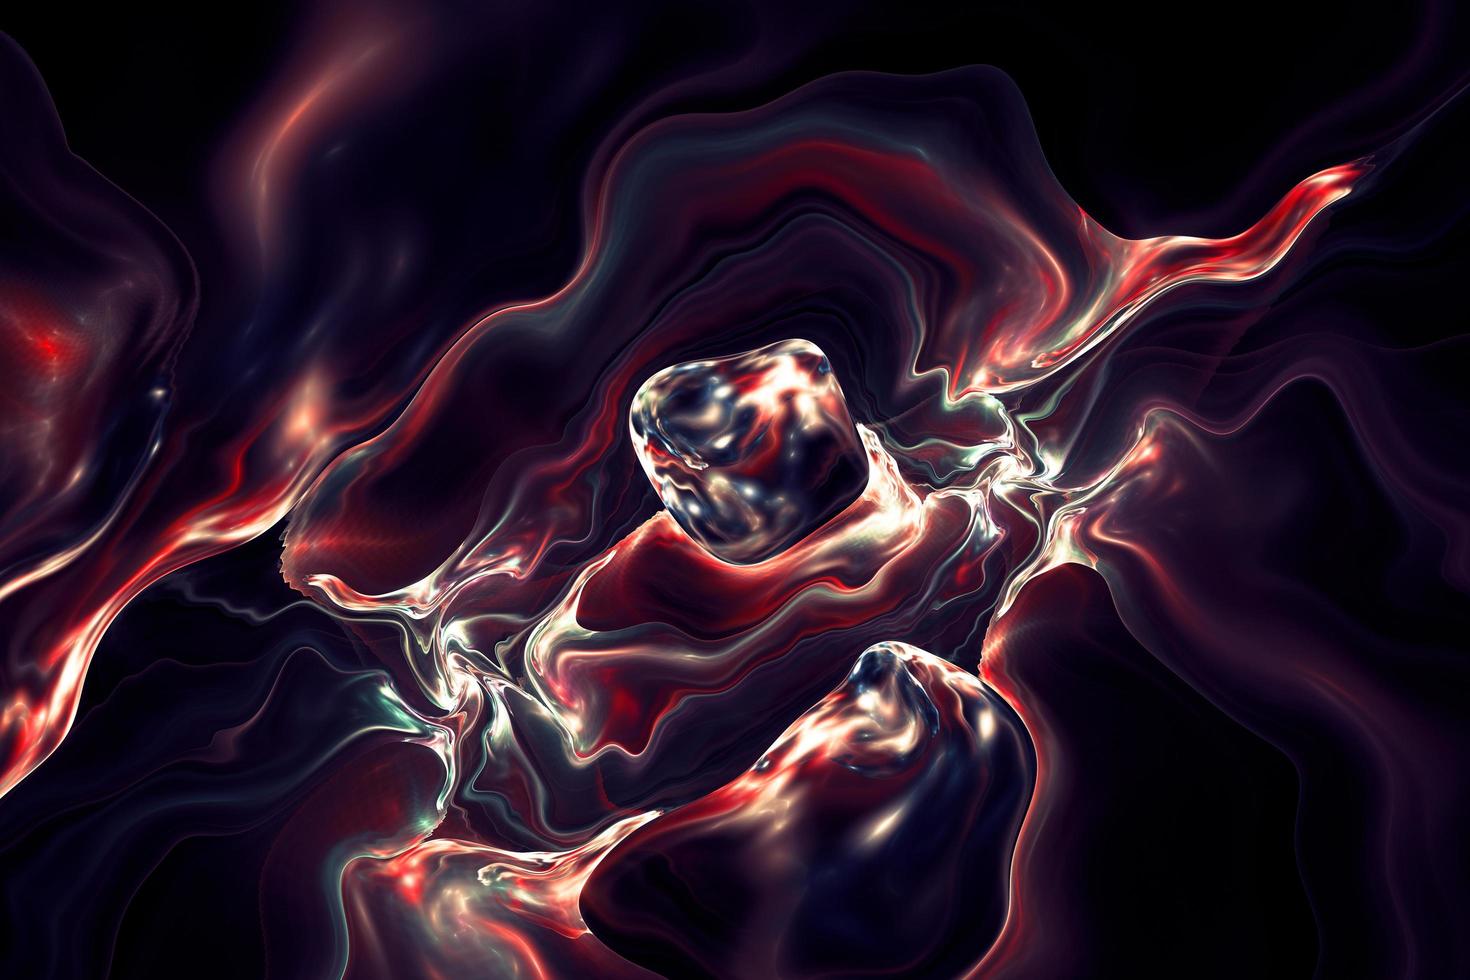 vívido y elegante diseño fluido degradado 3d renderizado en estilo abstracto. fondo líquido caliente metálico abstracto foto